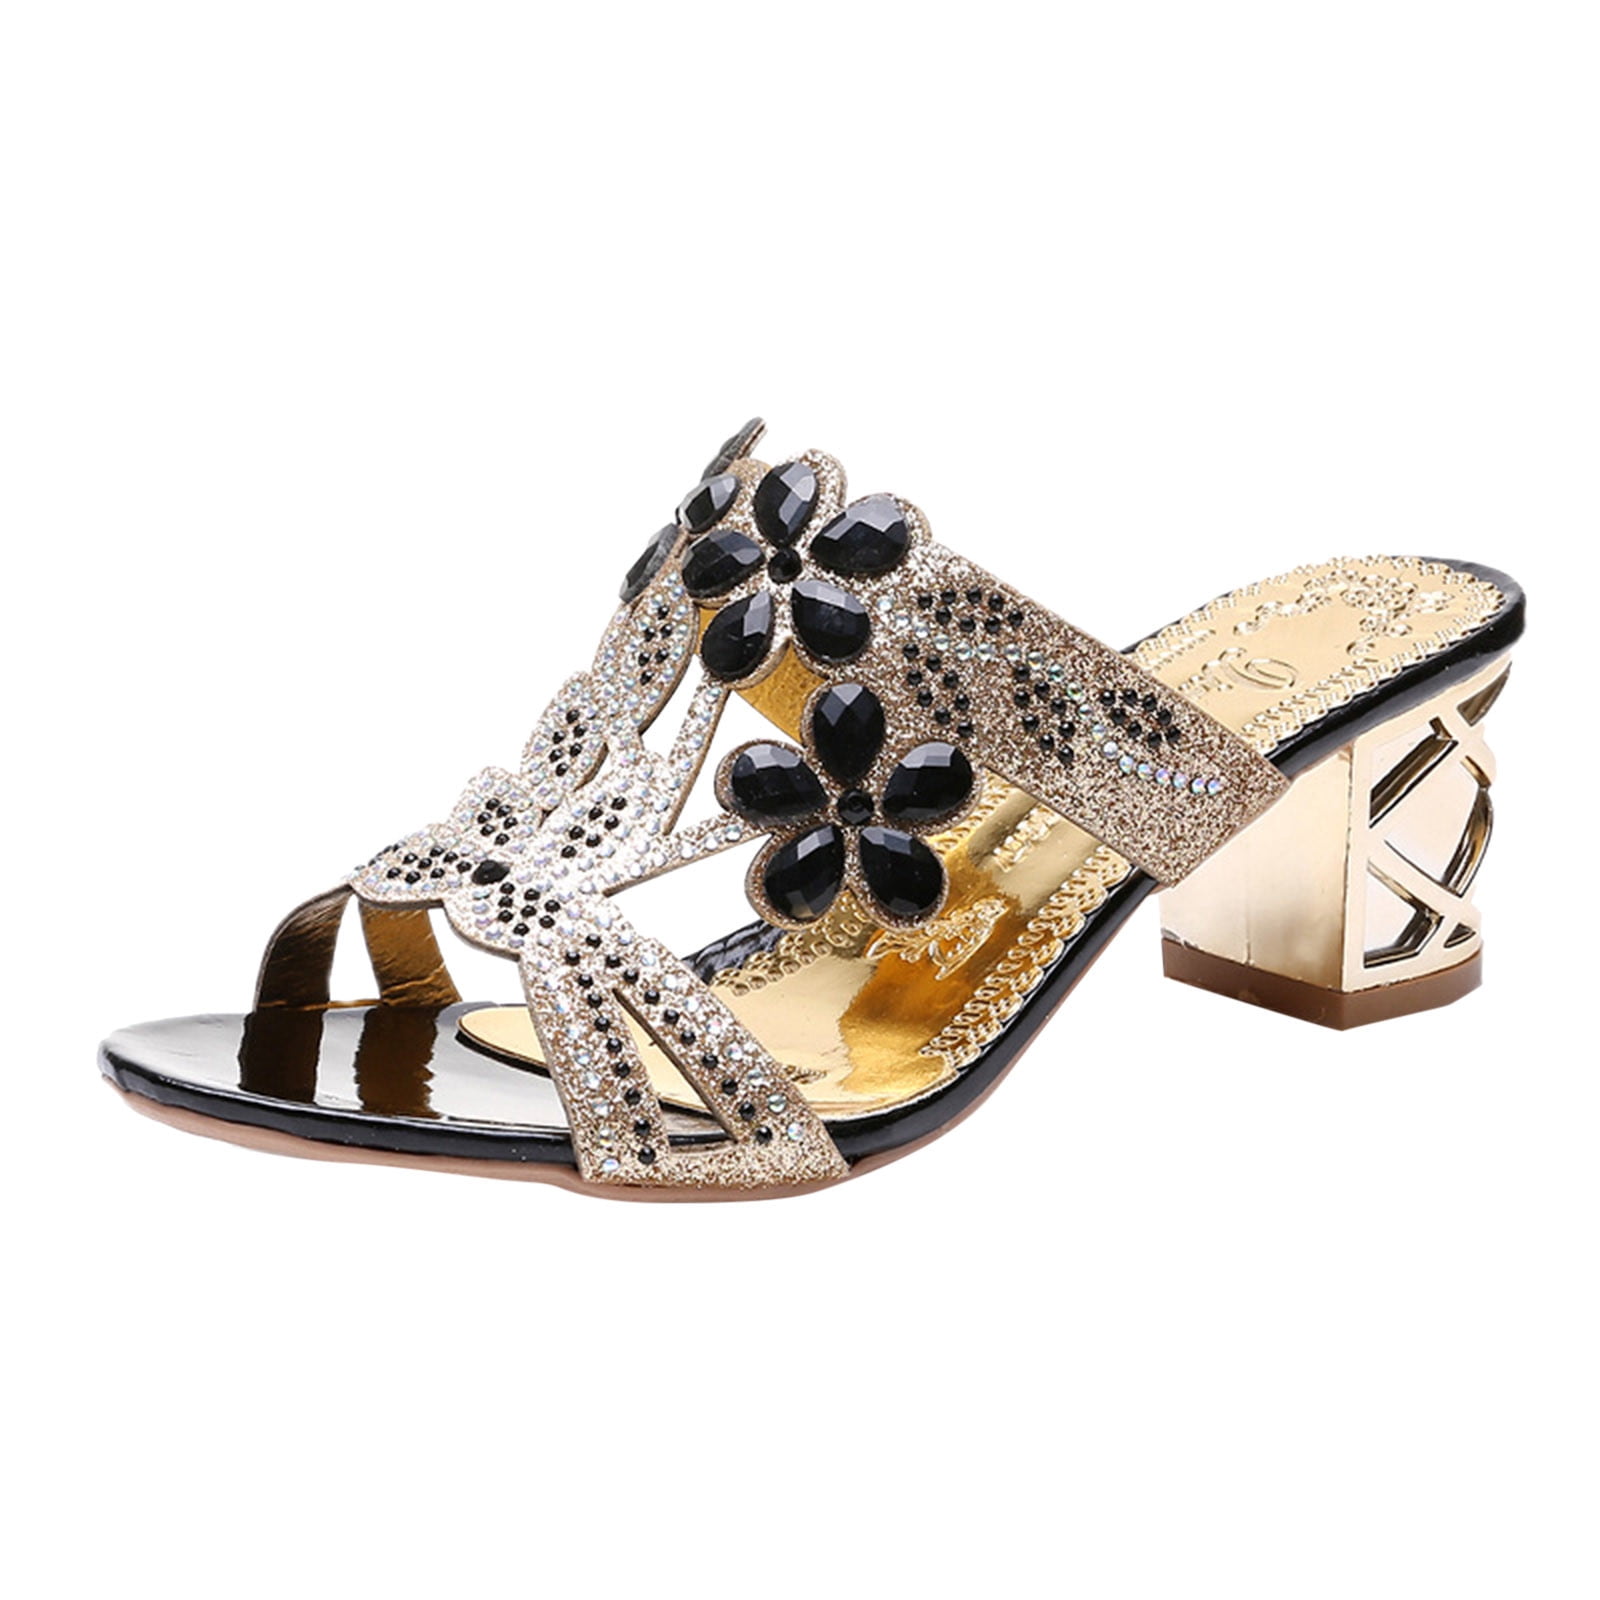 How To Wear Leopard Print Shoes Like A Fashionista - fashionsy.com